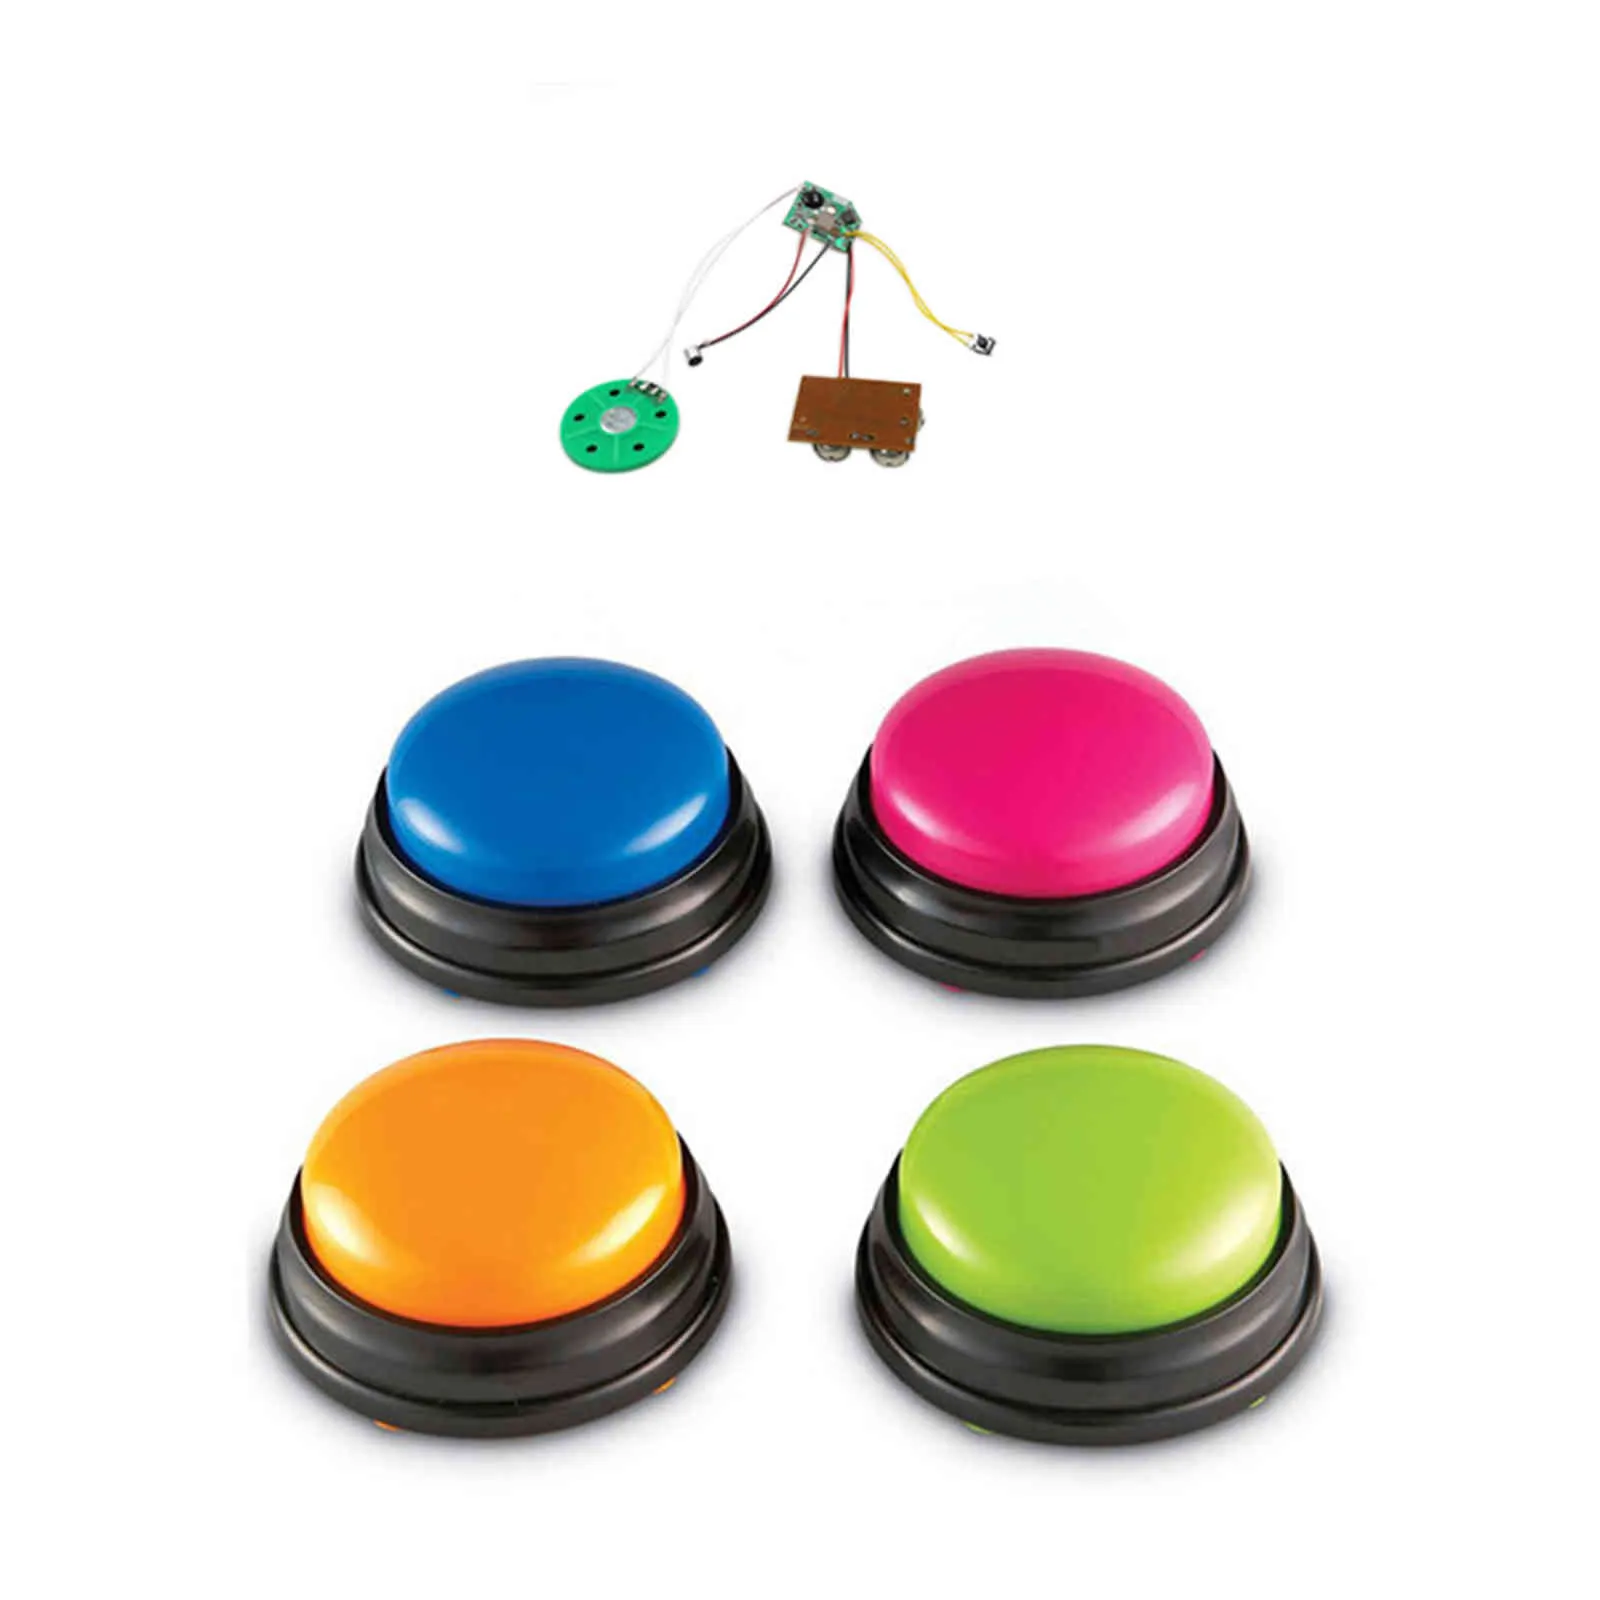 録音サウンドボタン小さなサイズの子供向けの簡単なキャリーボイスインタラクティブなおもちゃ留守ボタンオレンジピンクブルーグリーンノイズメーカー258V